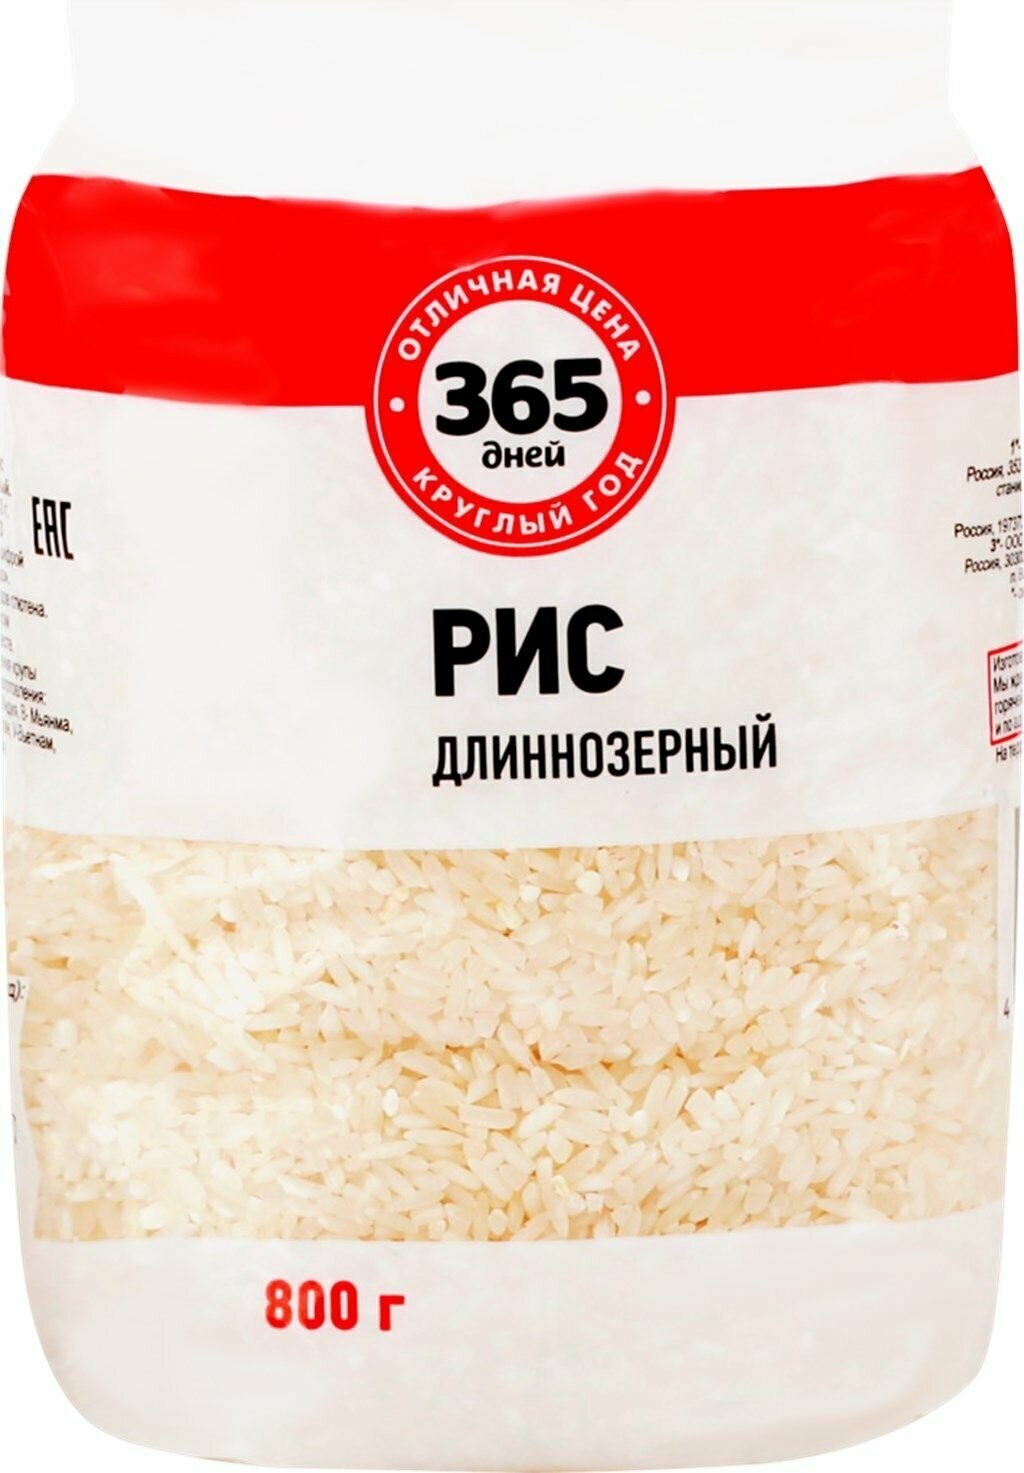 Рис длиннозерный 365 дней 3-й сорт, 800 г - 10 шт.